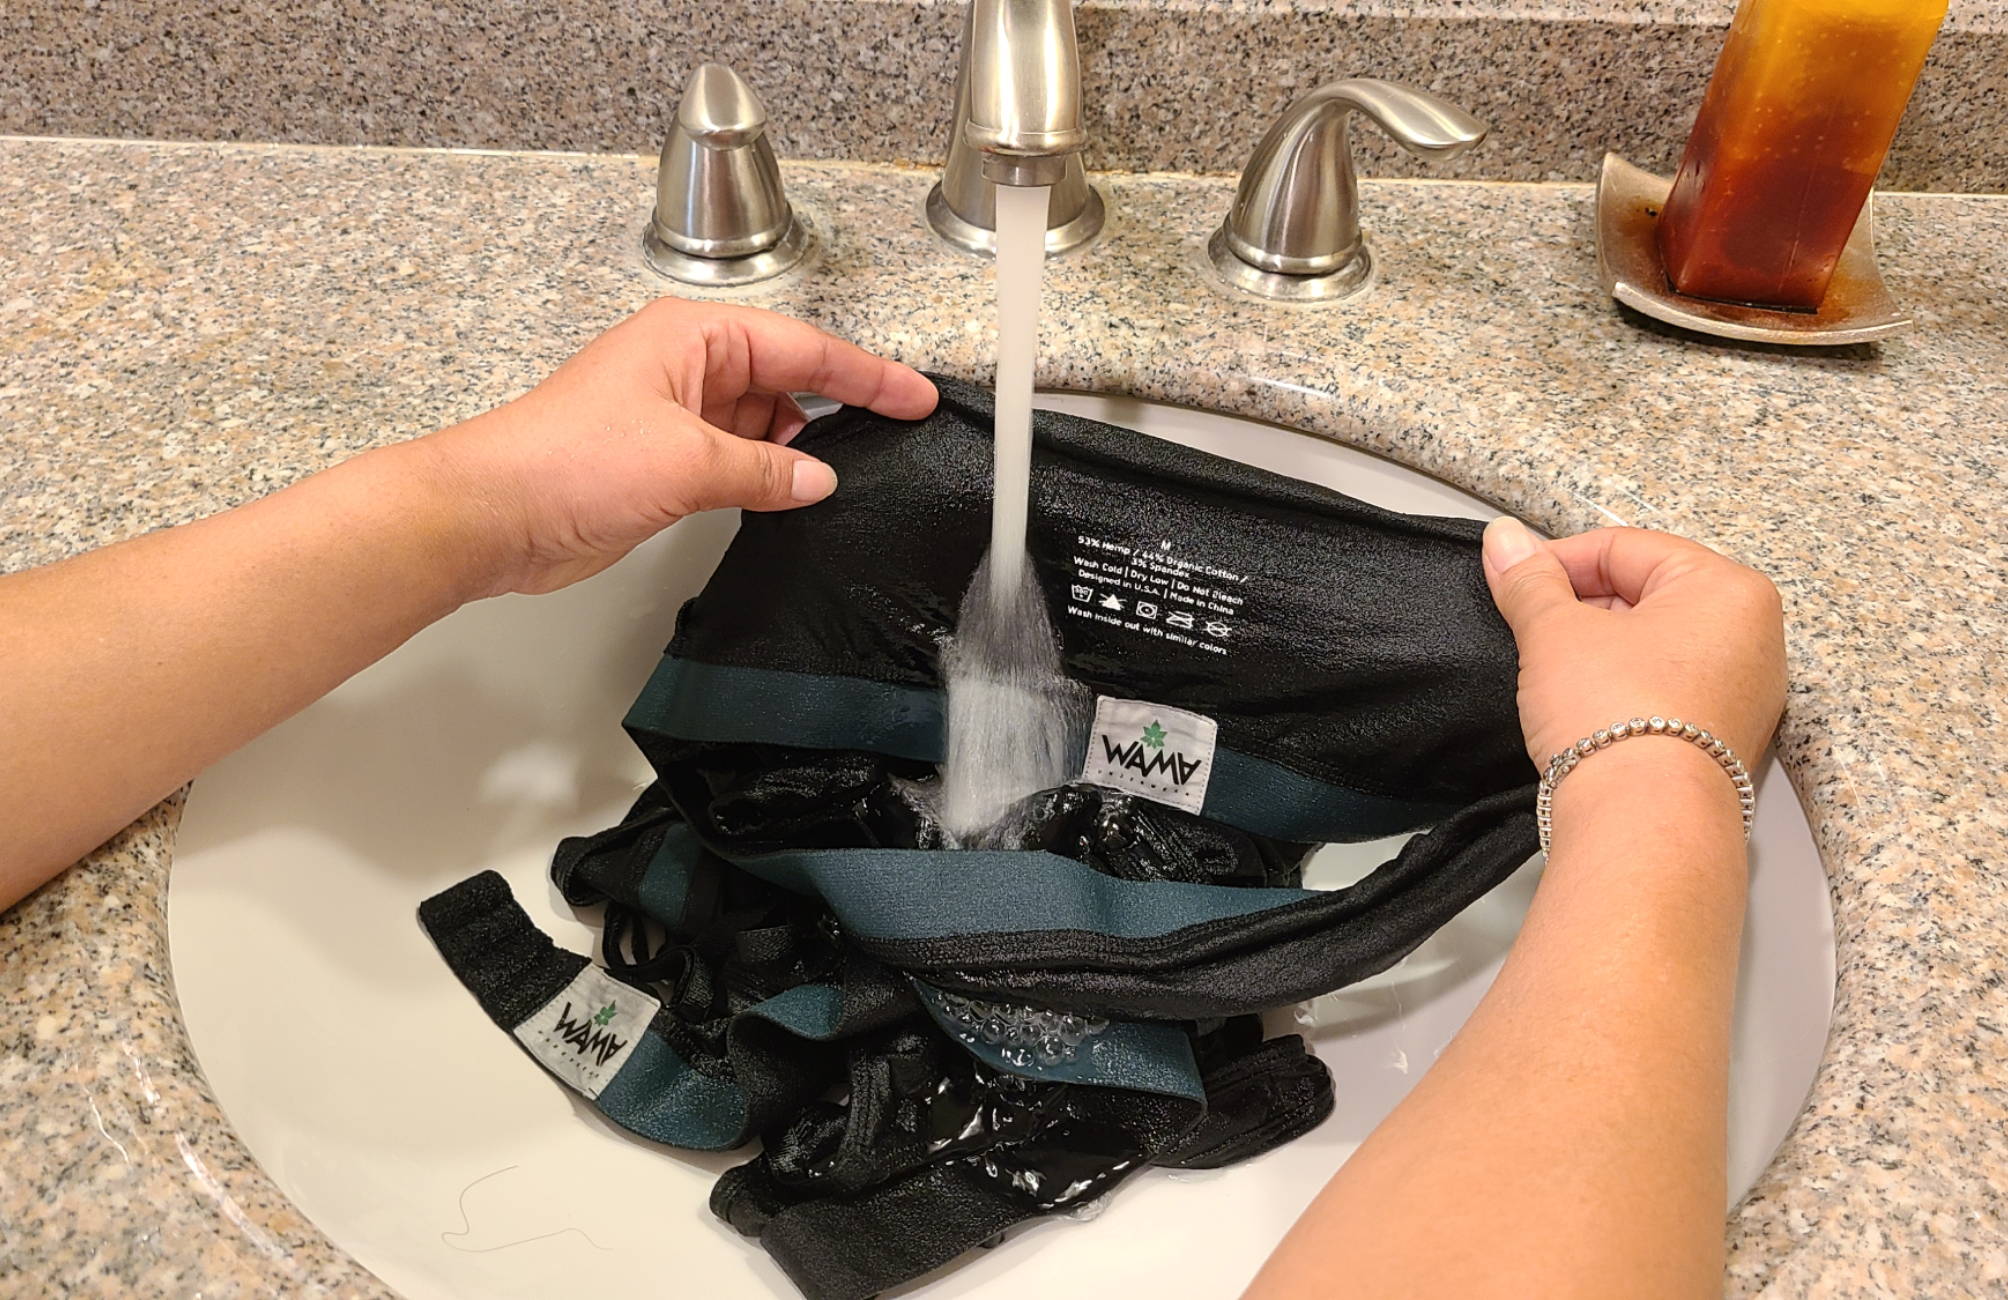 How To Hand Wash Underwear Easily In The Sink – WAMA Underwear